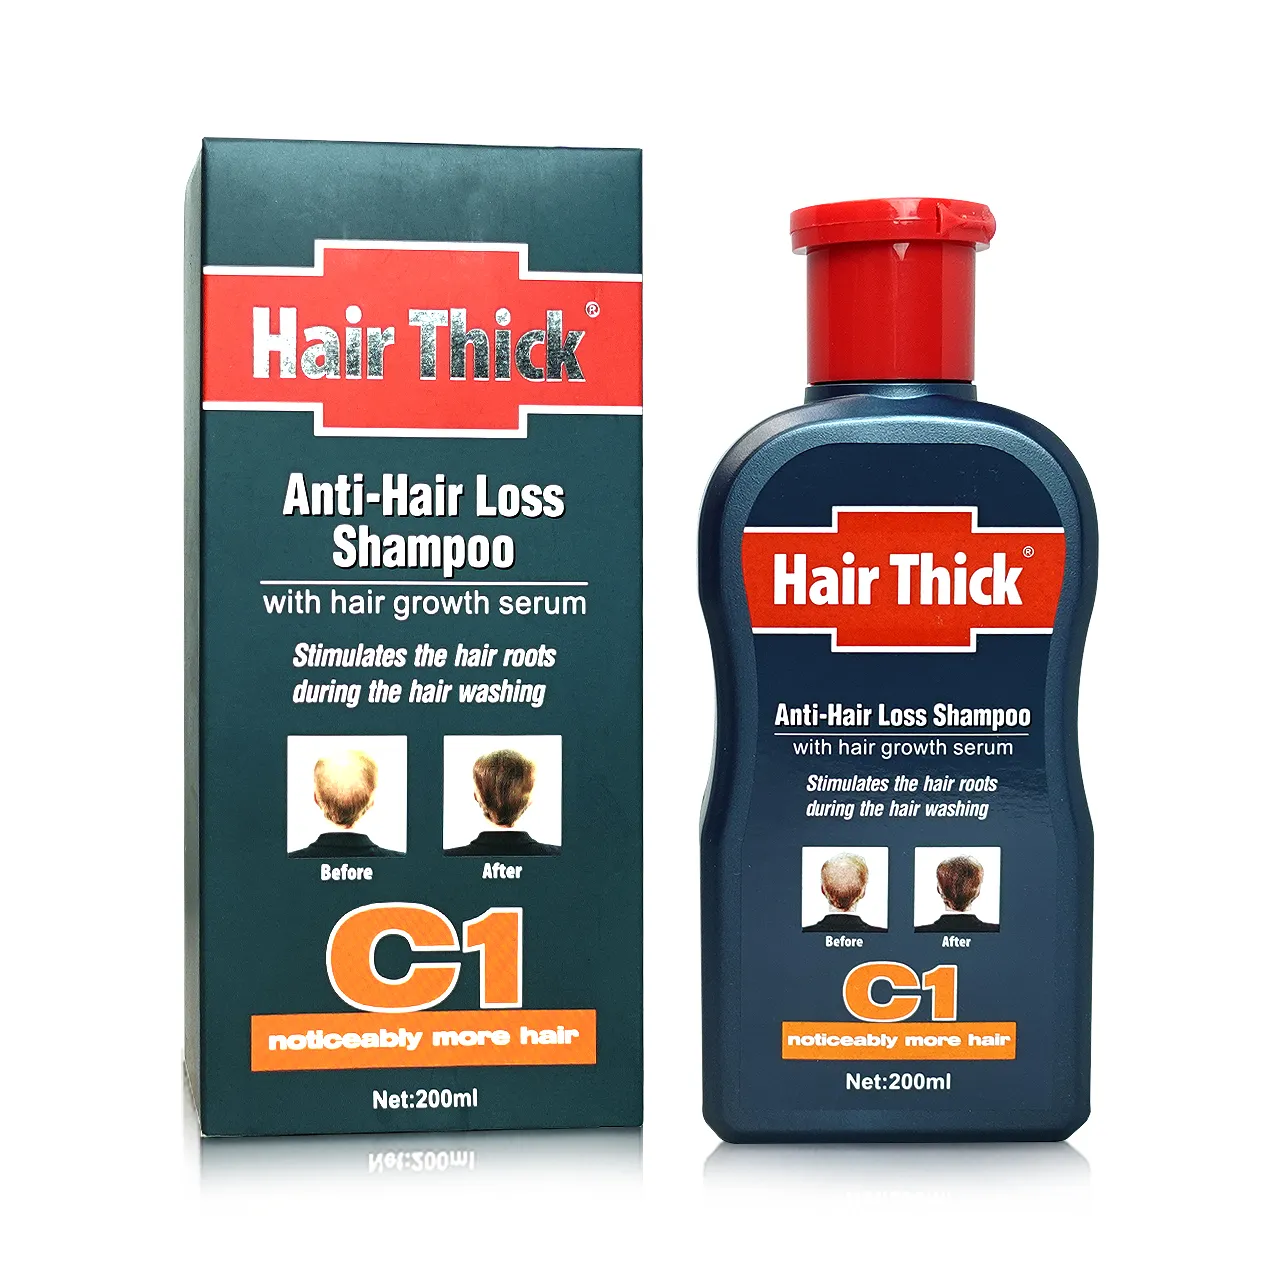 Dexe Hair Thick Anti-Hair Loss Shampoo 200ml